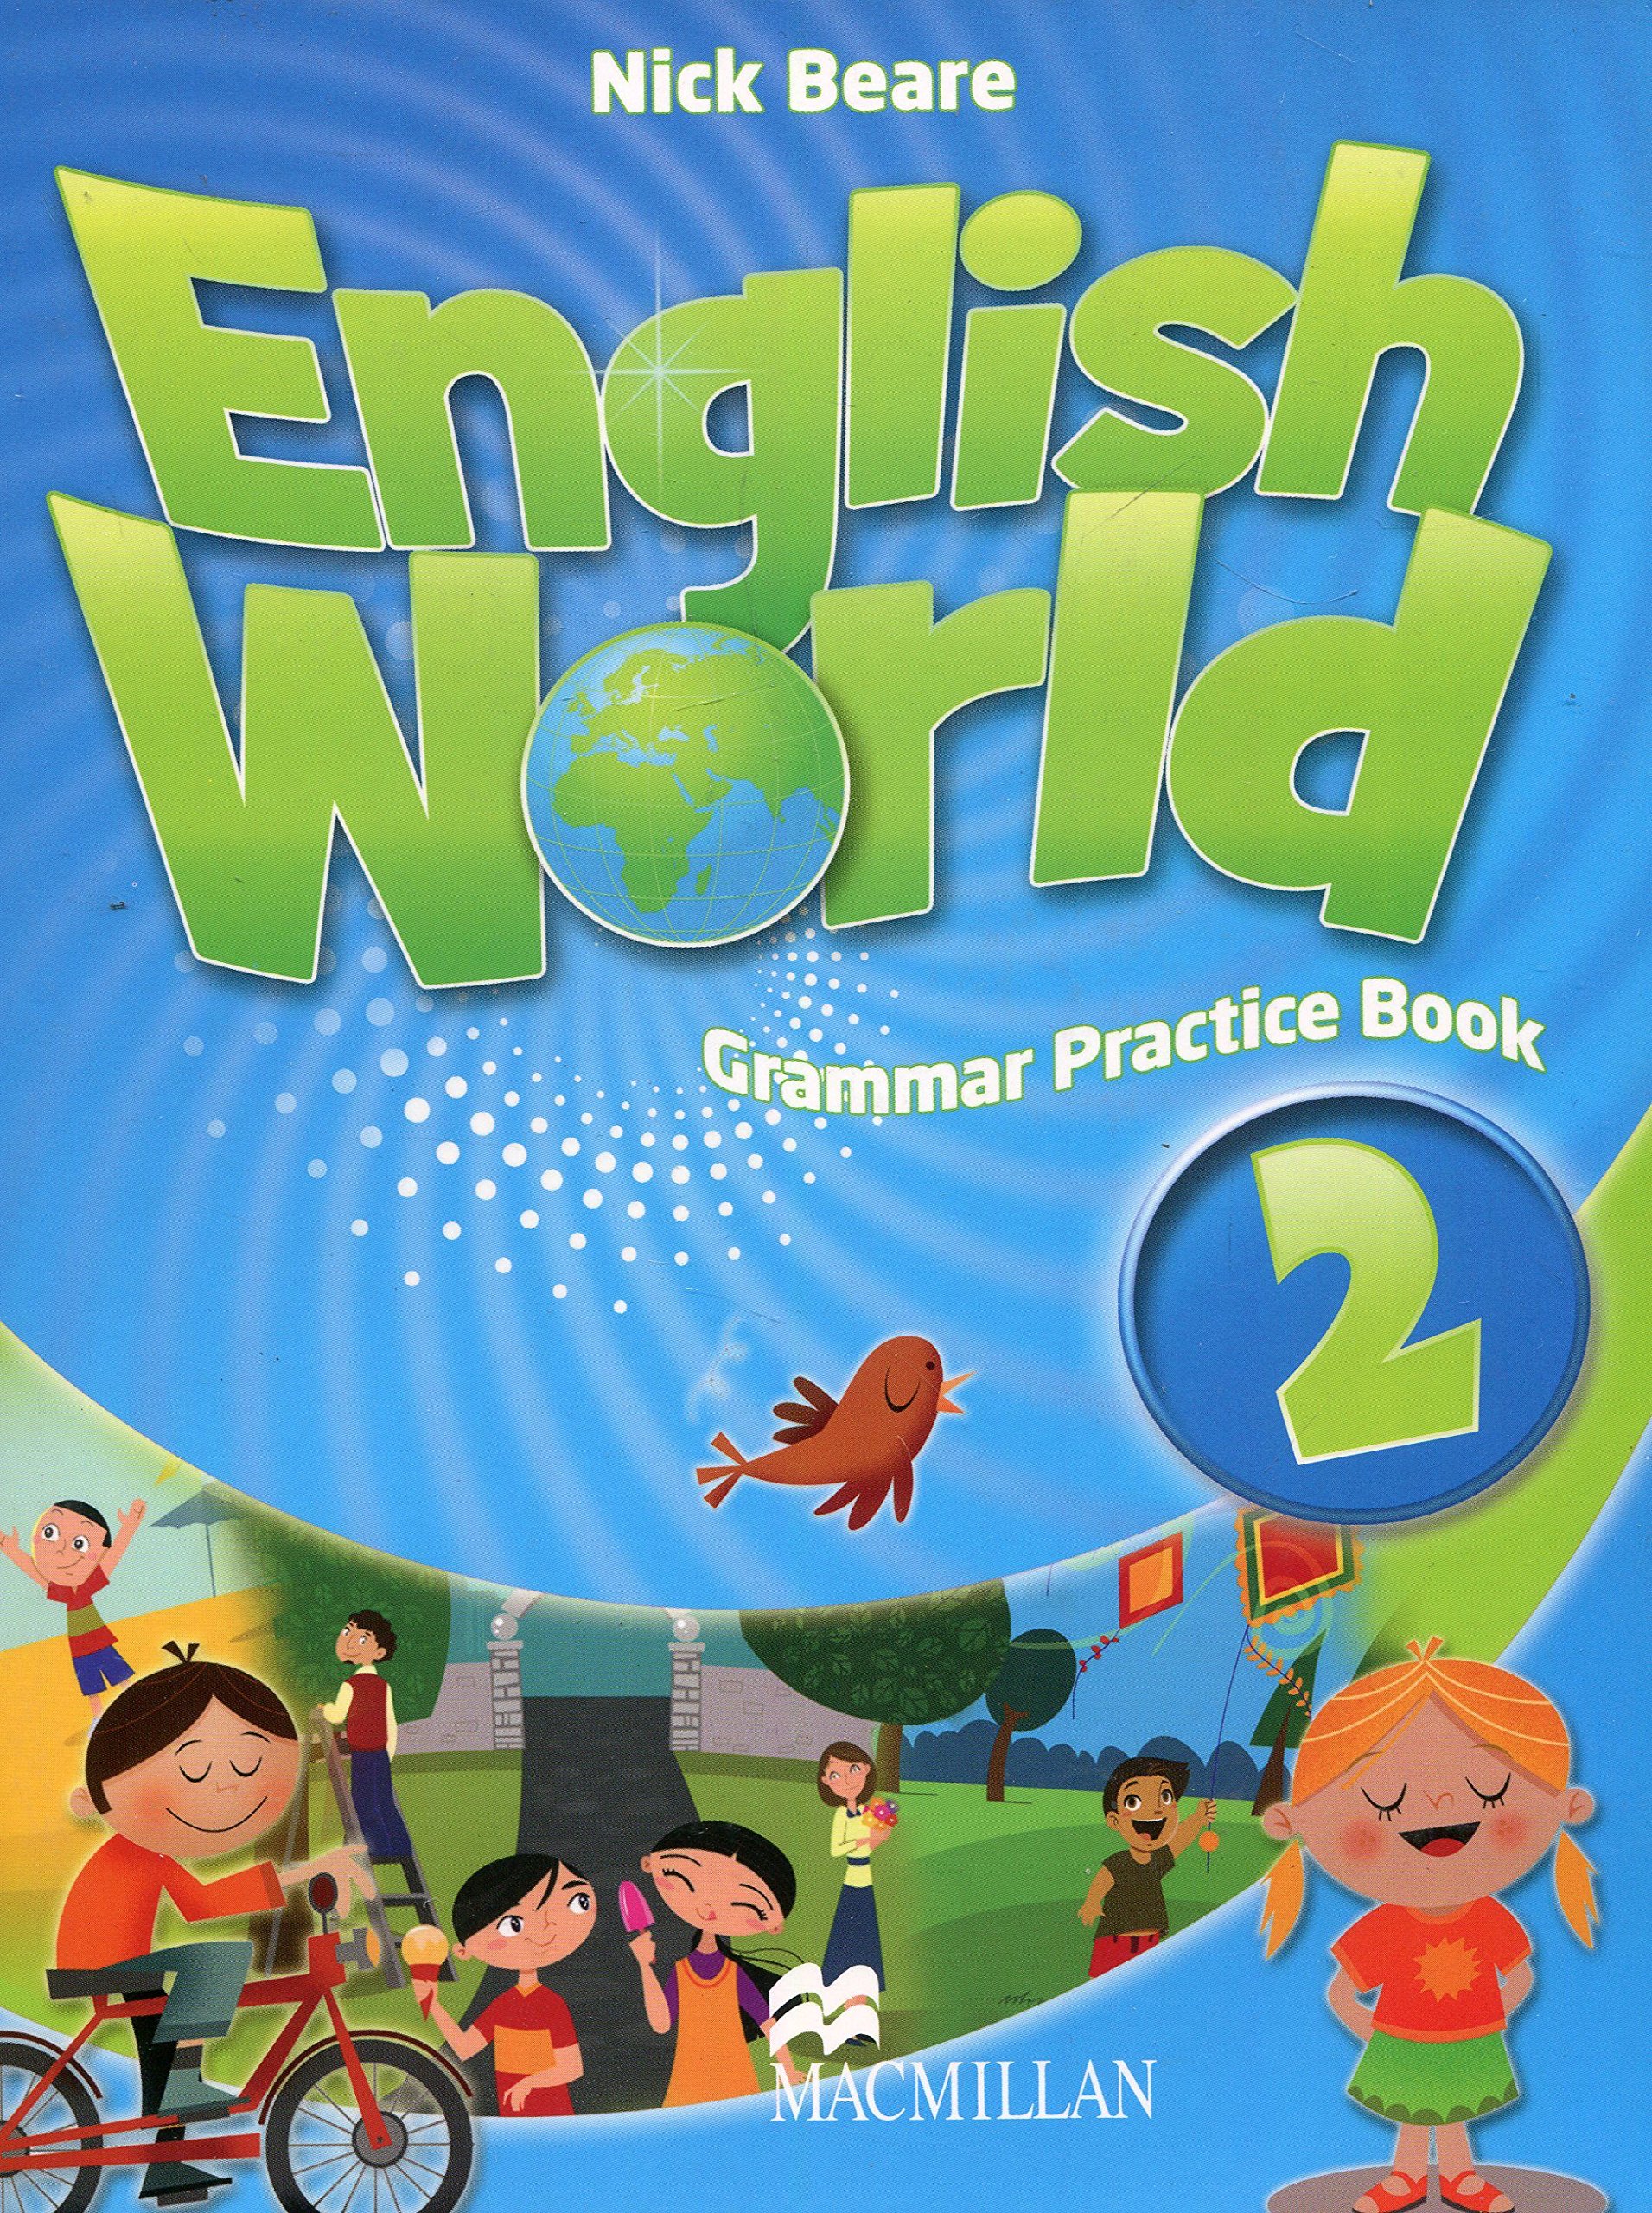 English World Grammar Practice Book 2